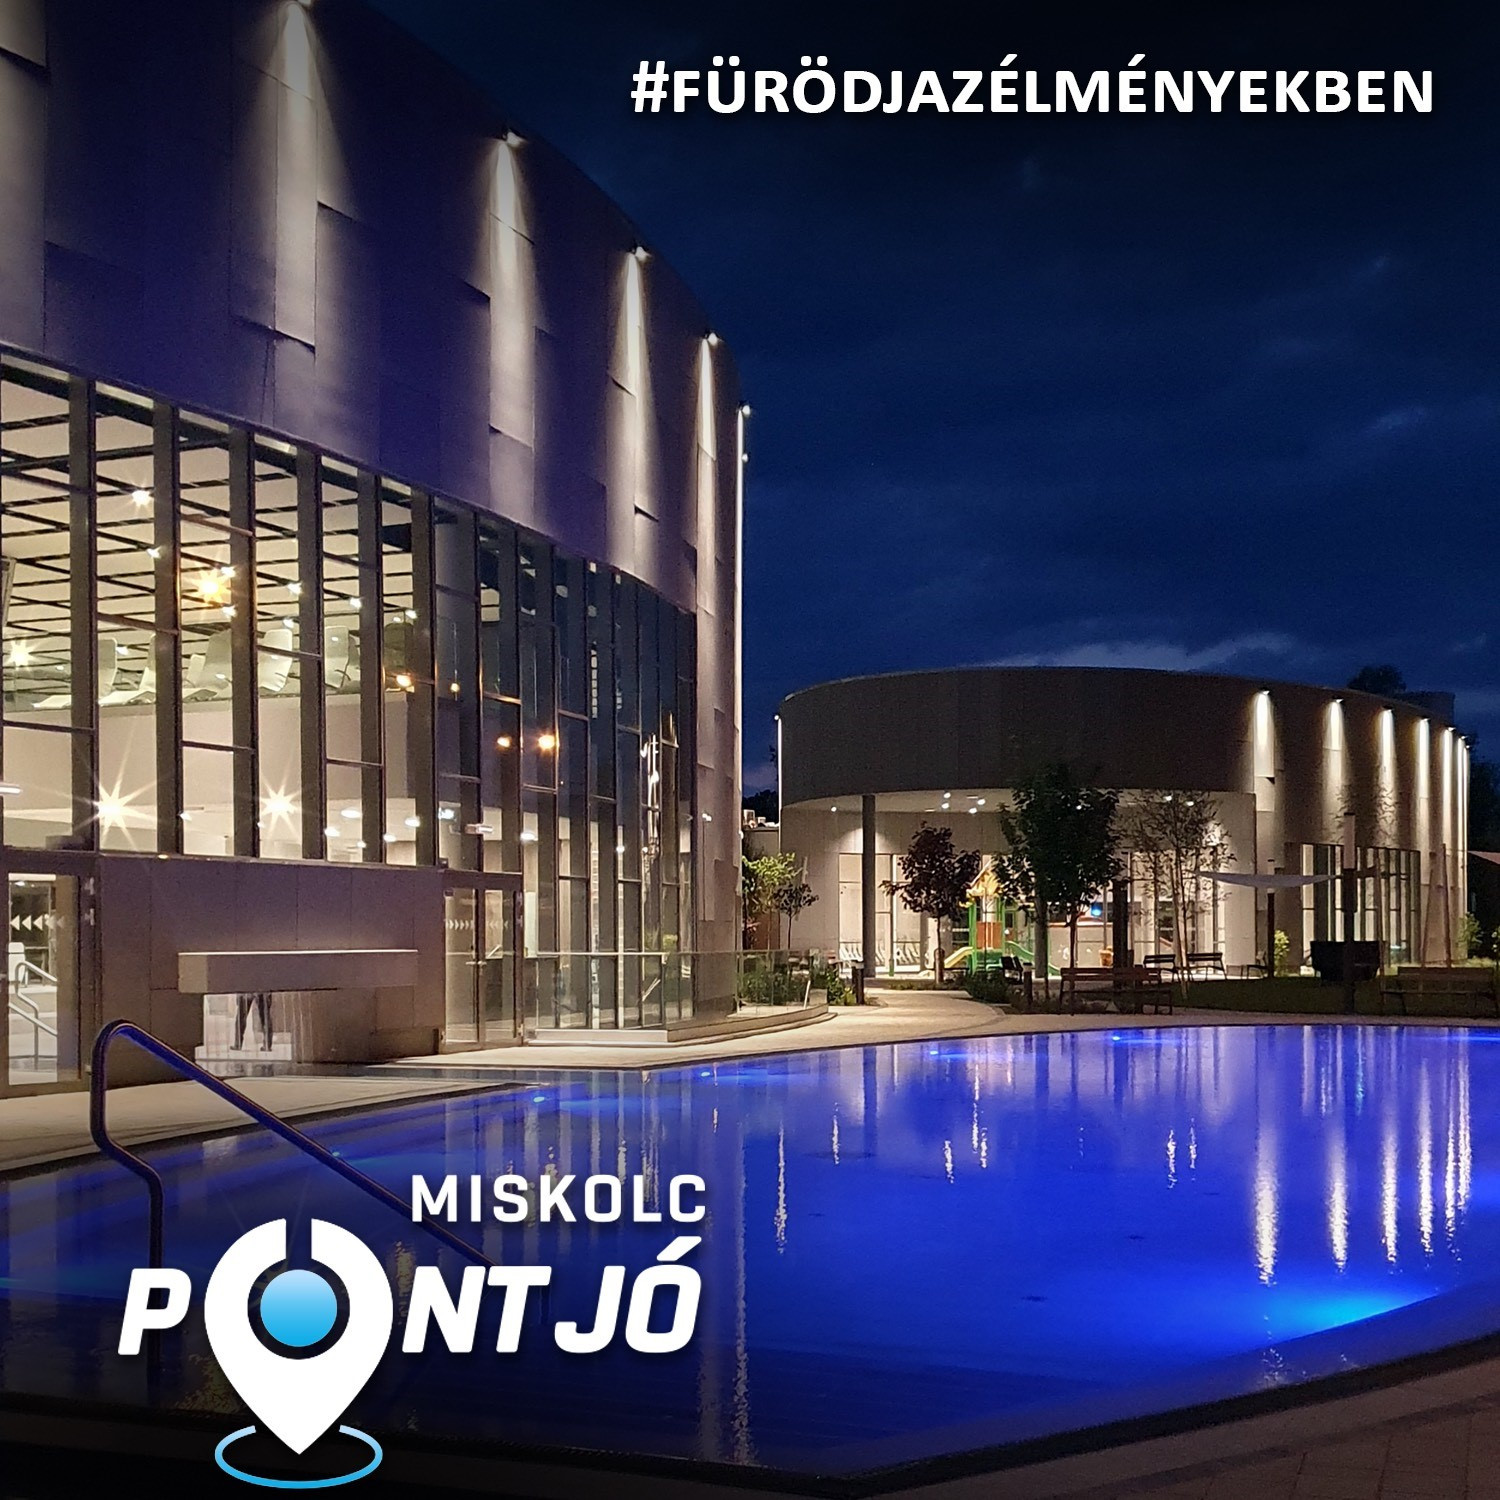 Miskolc pont jó! - Online turisztikai kampányt indított Miskolc